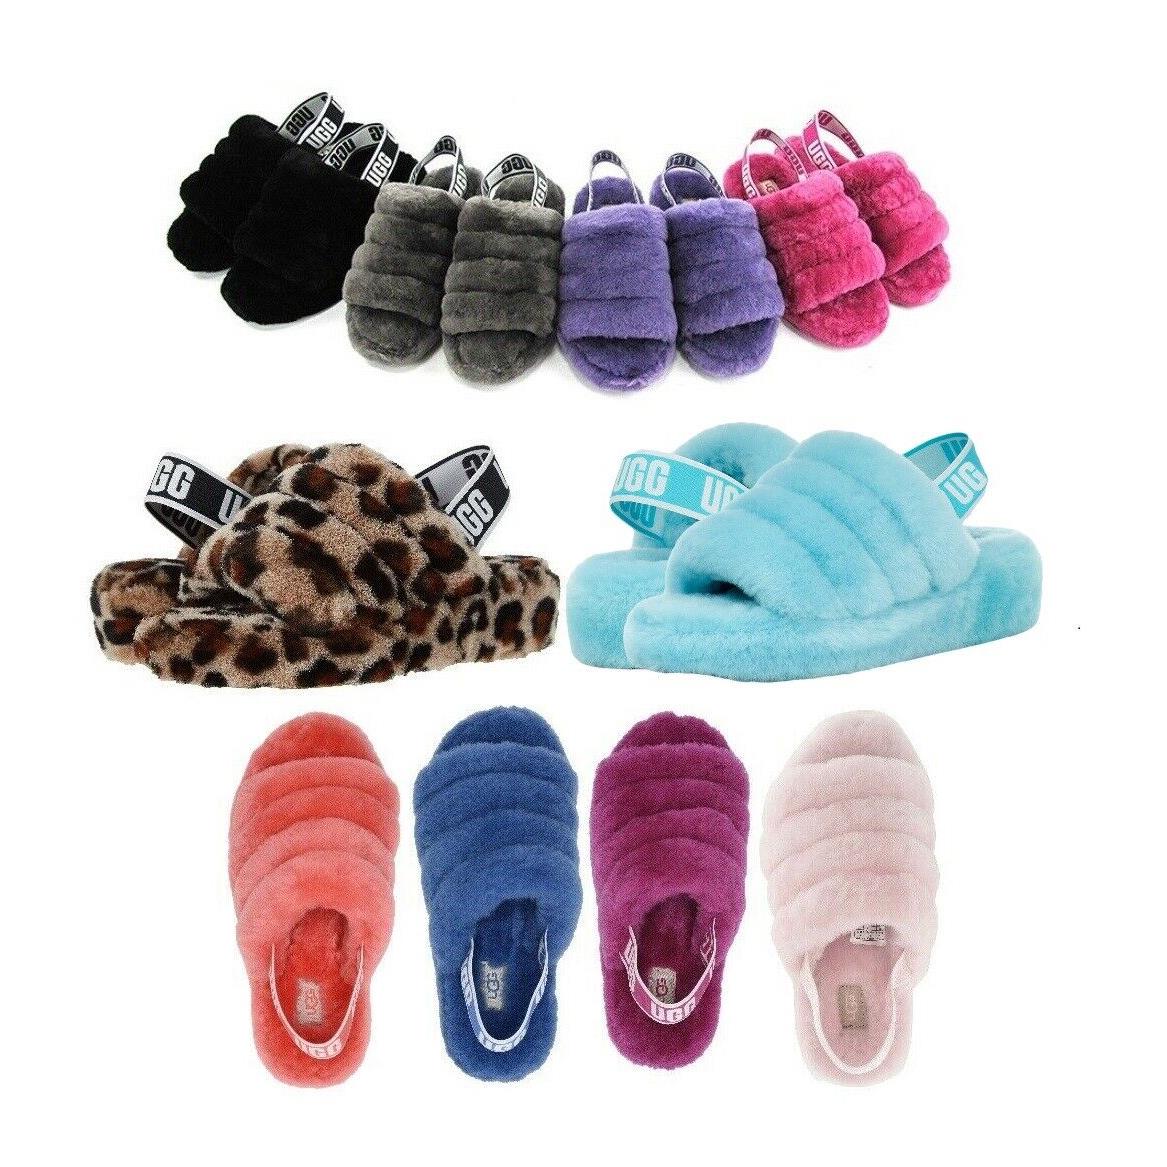 Ugg Soft Fluff Yeah Slide Slippers Women`s Shoes Sandal Black Pink Chestnut - Black, Pink